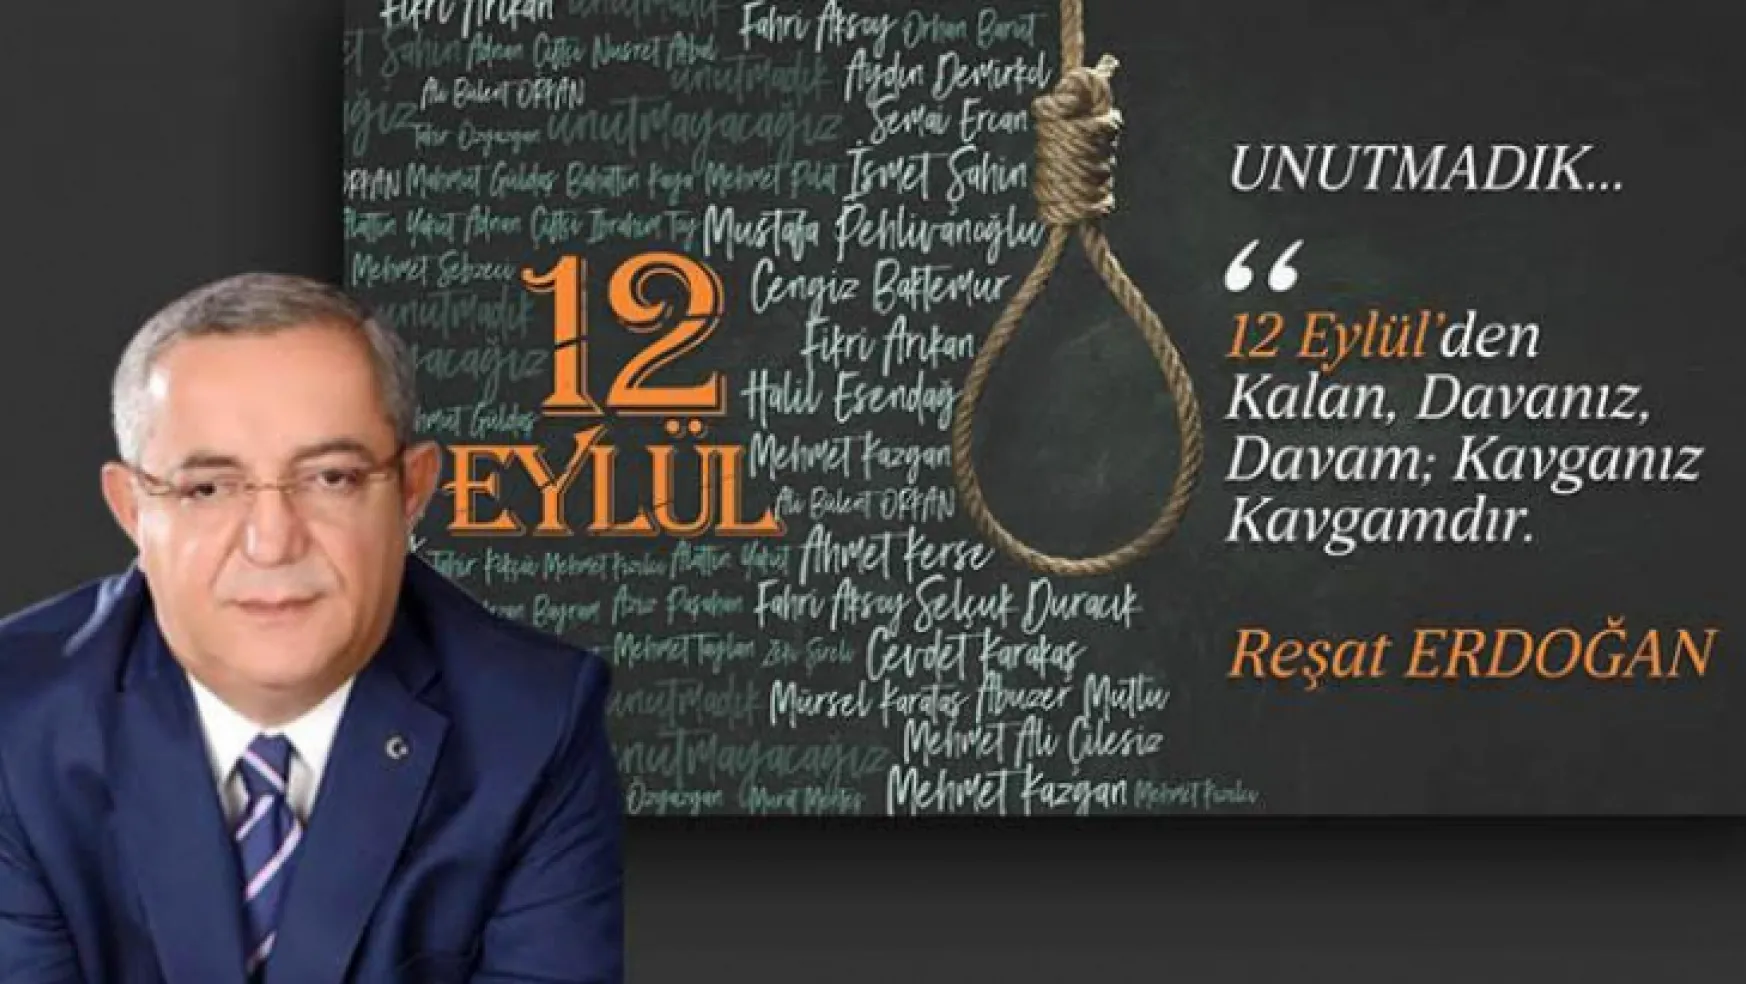 Reşat Erdoğan, yıl dönümünde 12 Eylül darbesini telin etti